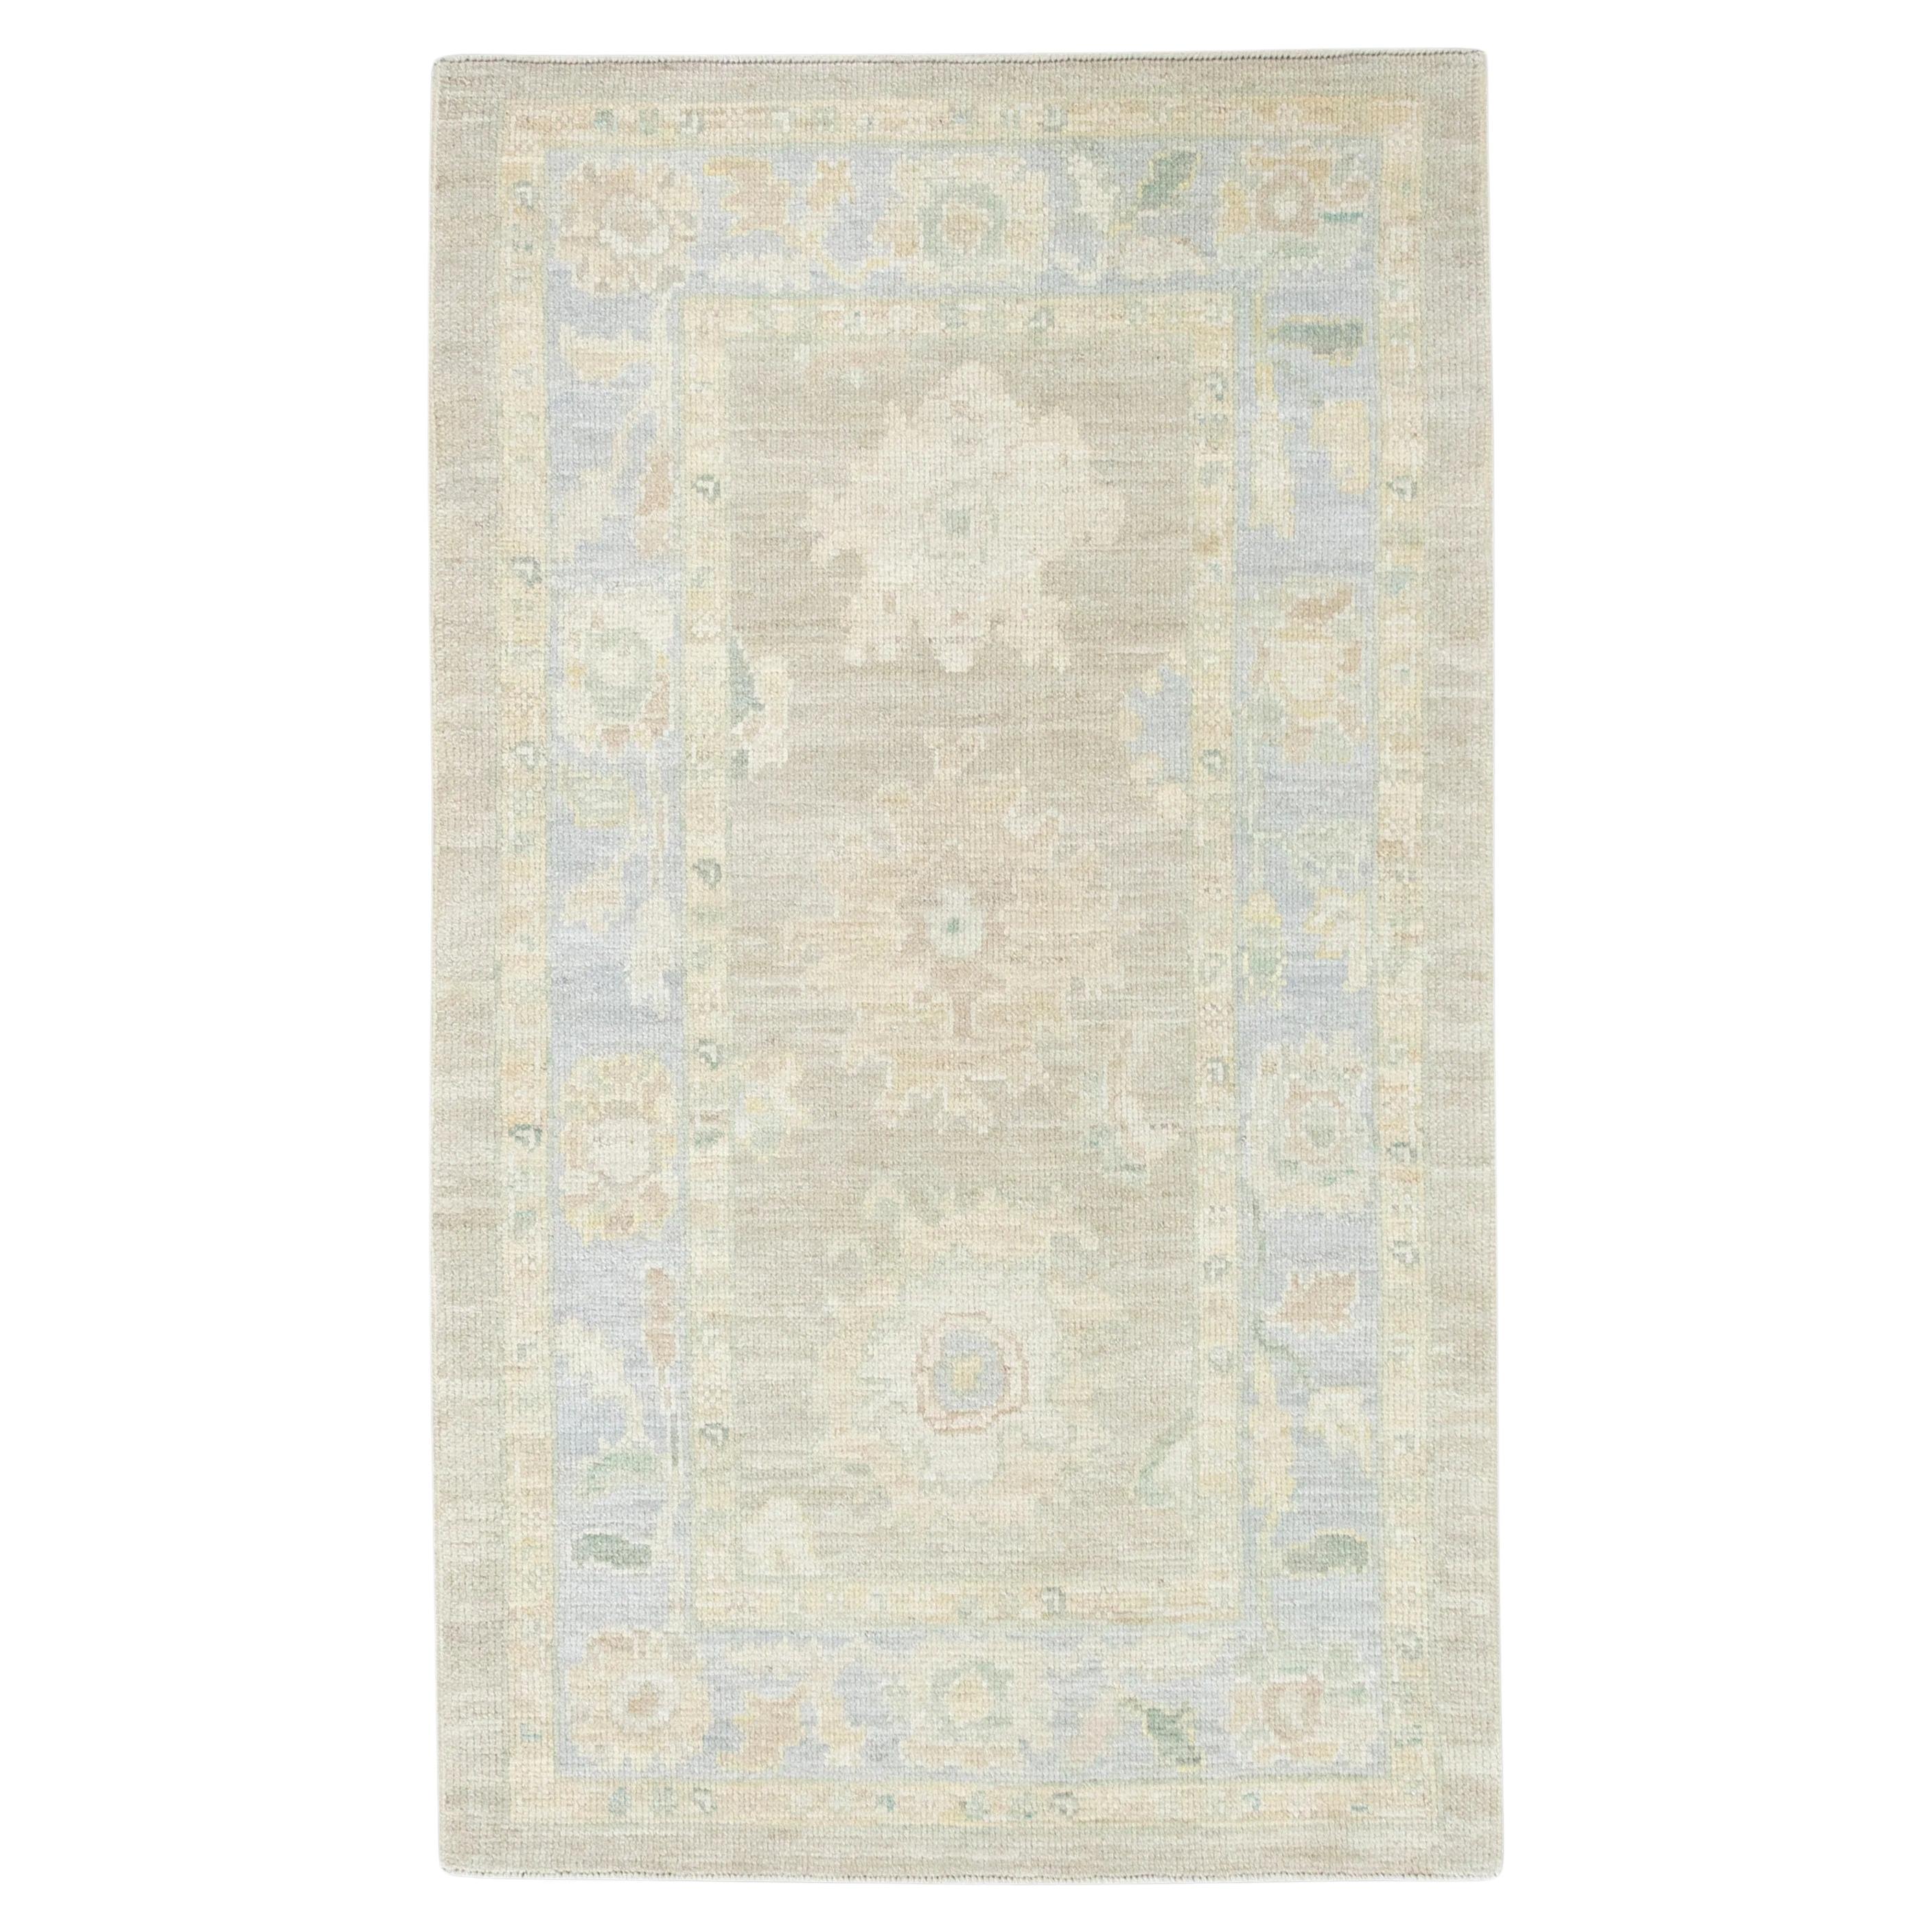 Handgewebter türkischer Oushak-Teppich aus Wolle in Braun und Blau mit Blumenmuster 3' x 5'2"